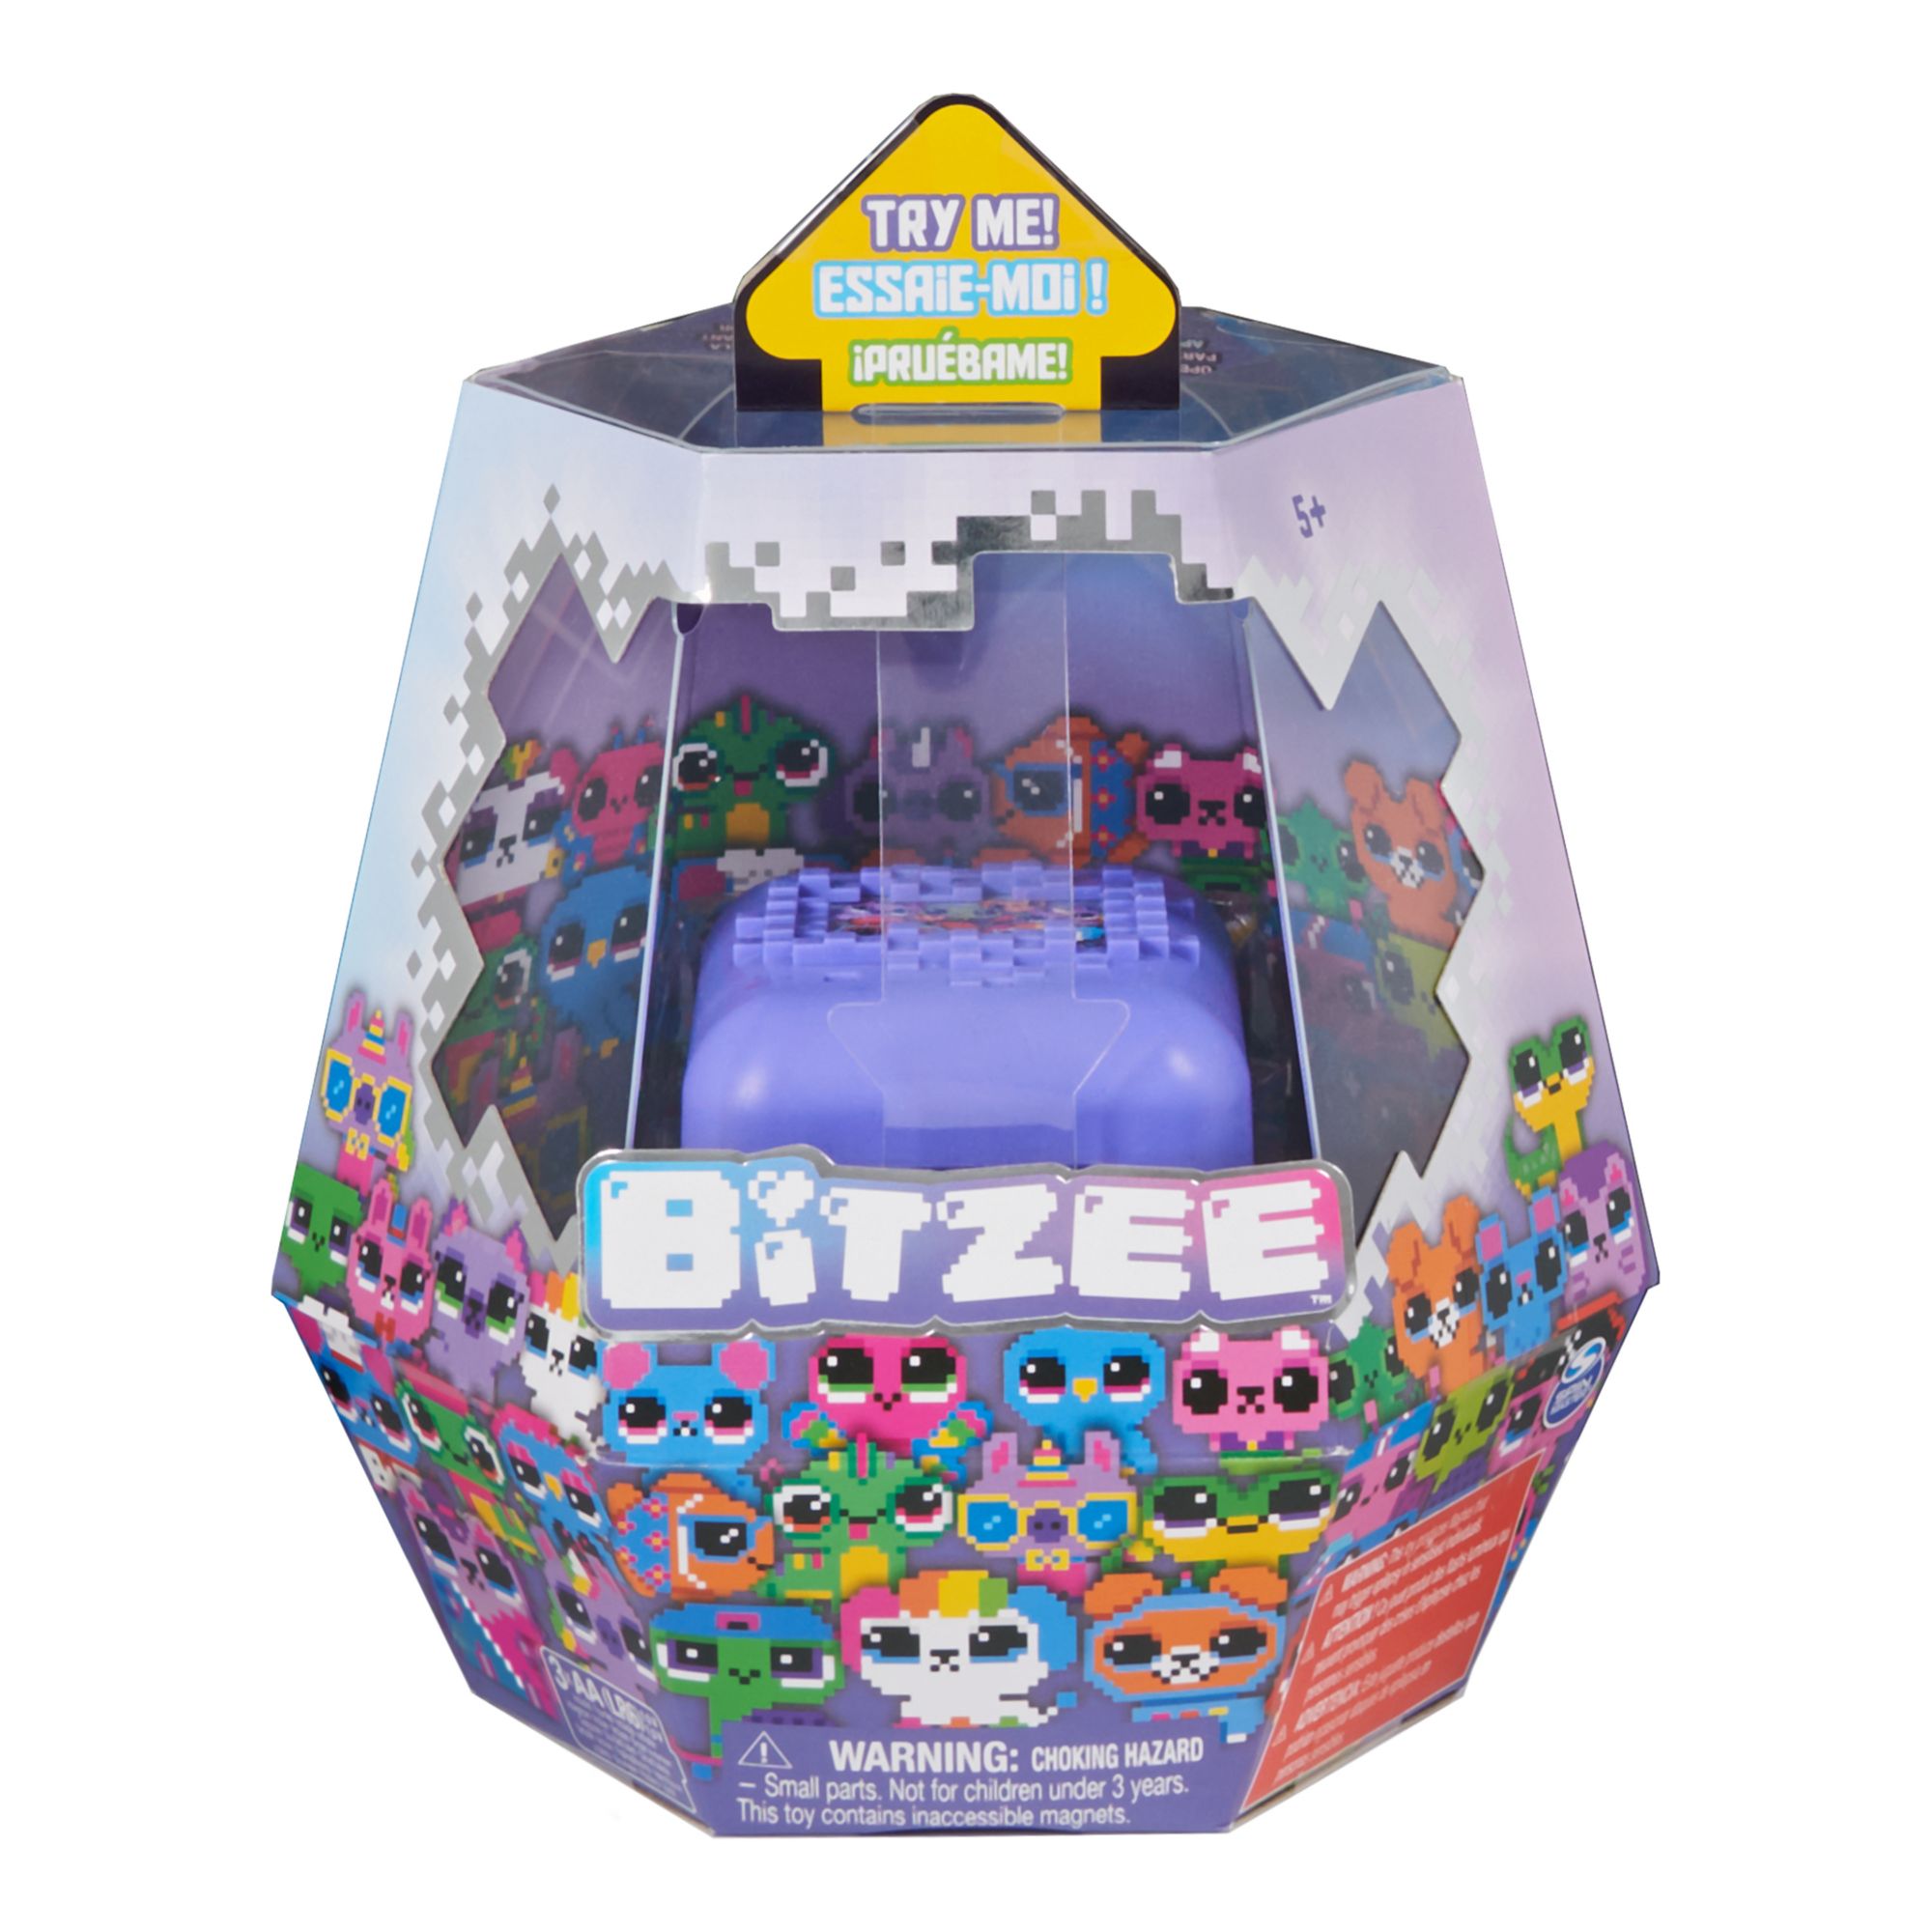  XEGIMOR Case For Bitzee Interactive Toy Digital Pet